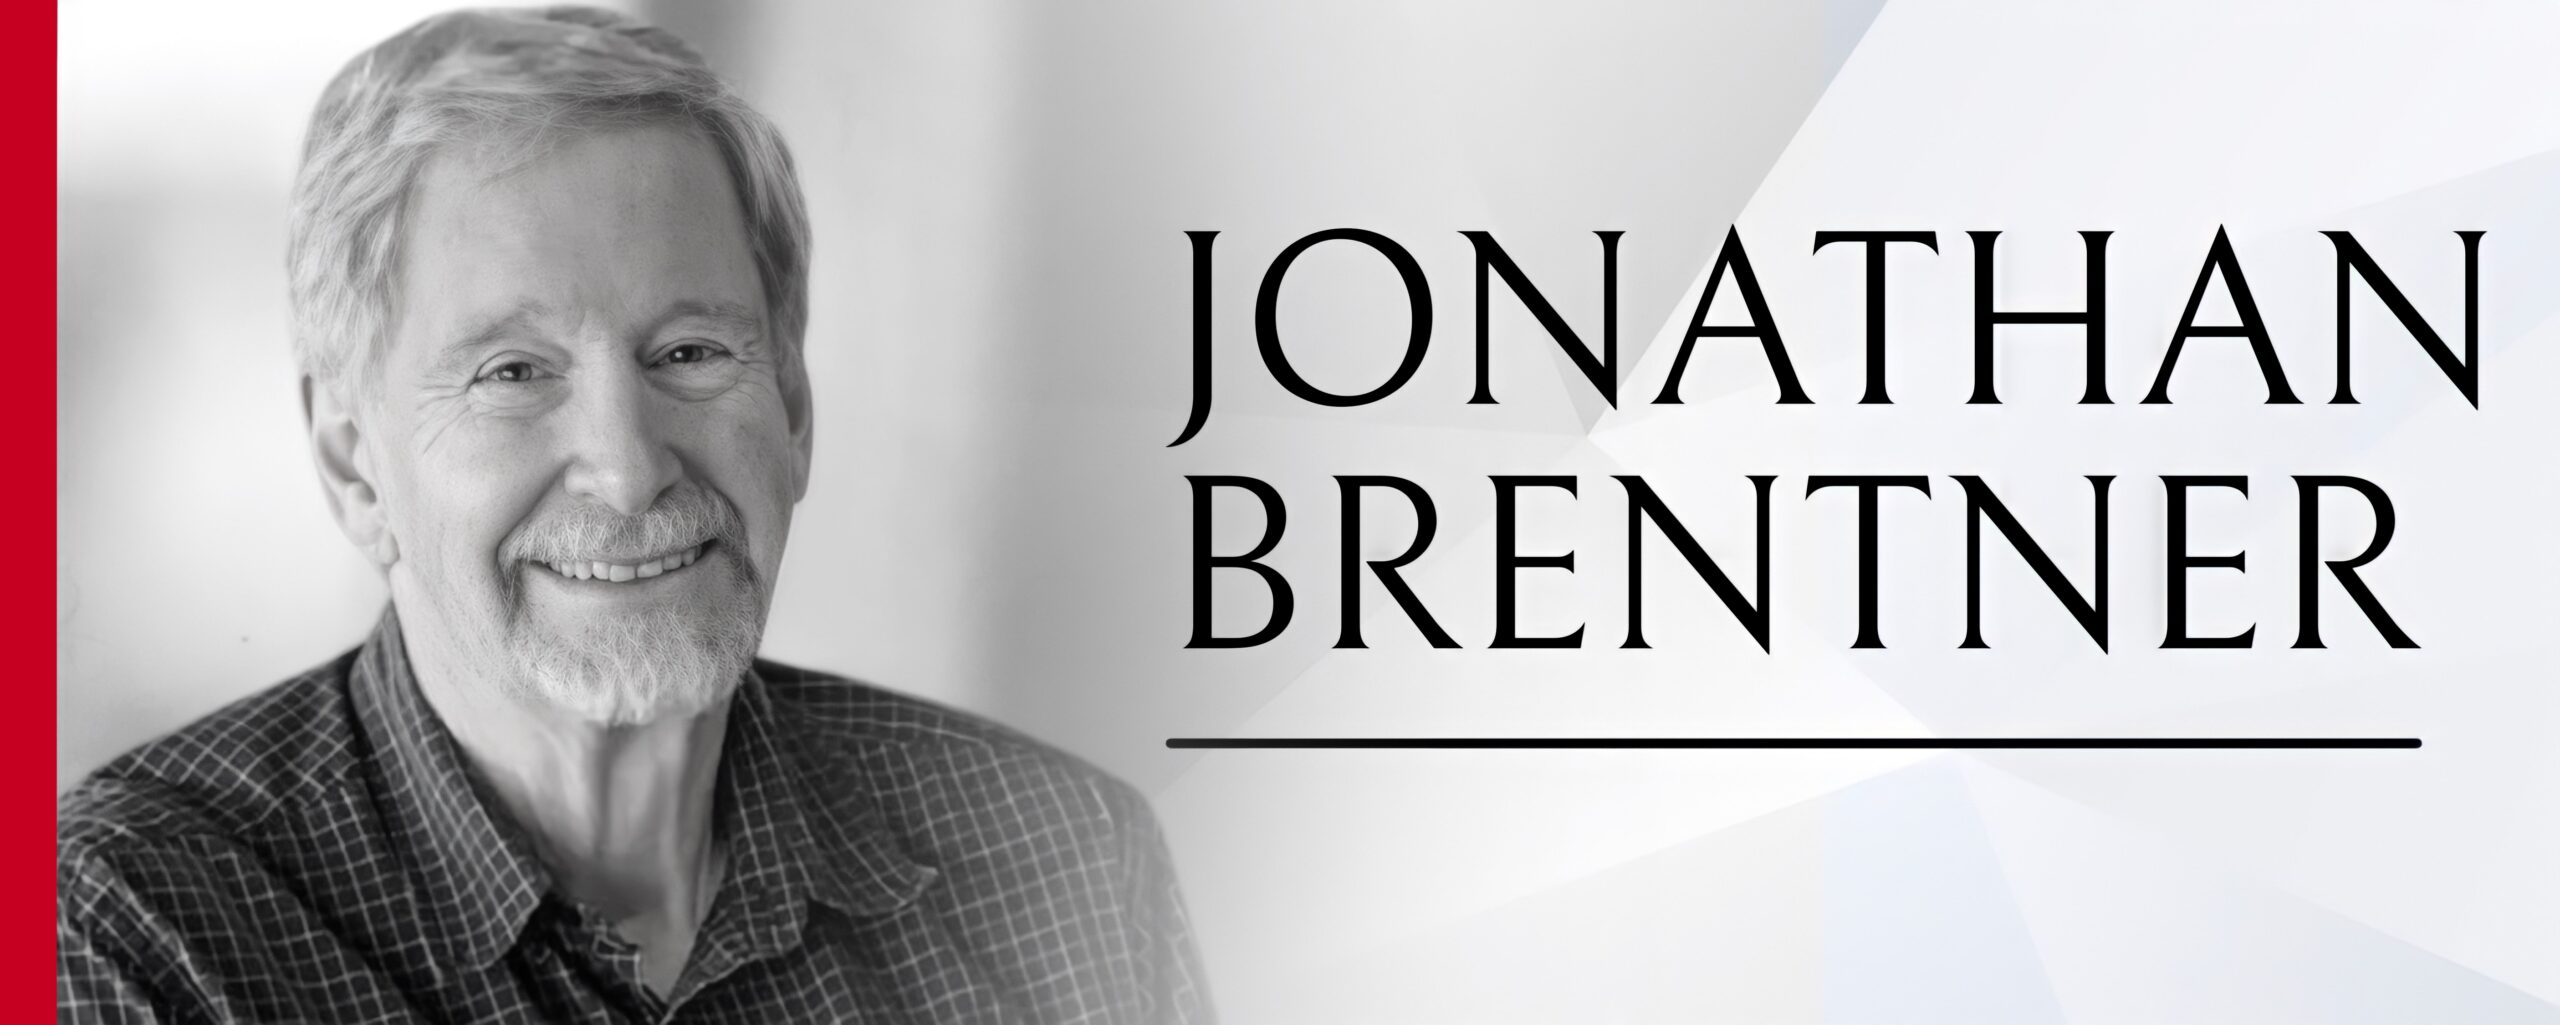 Jonathan Brentner